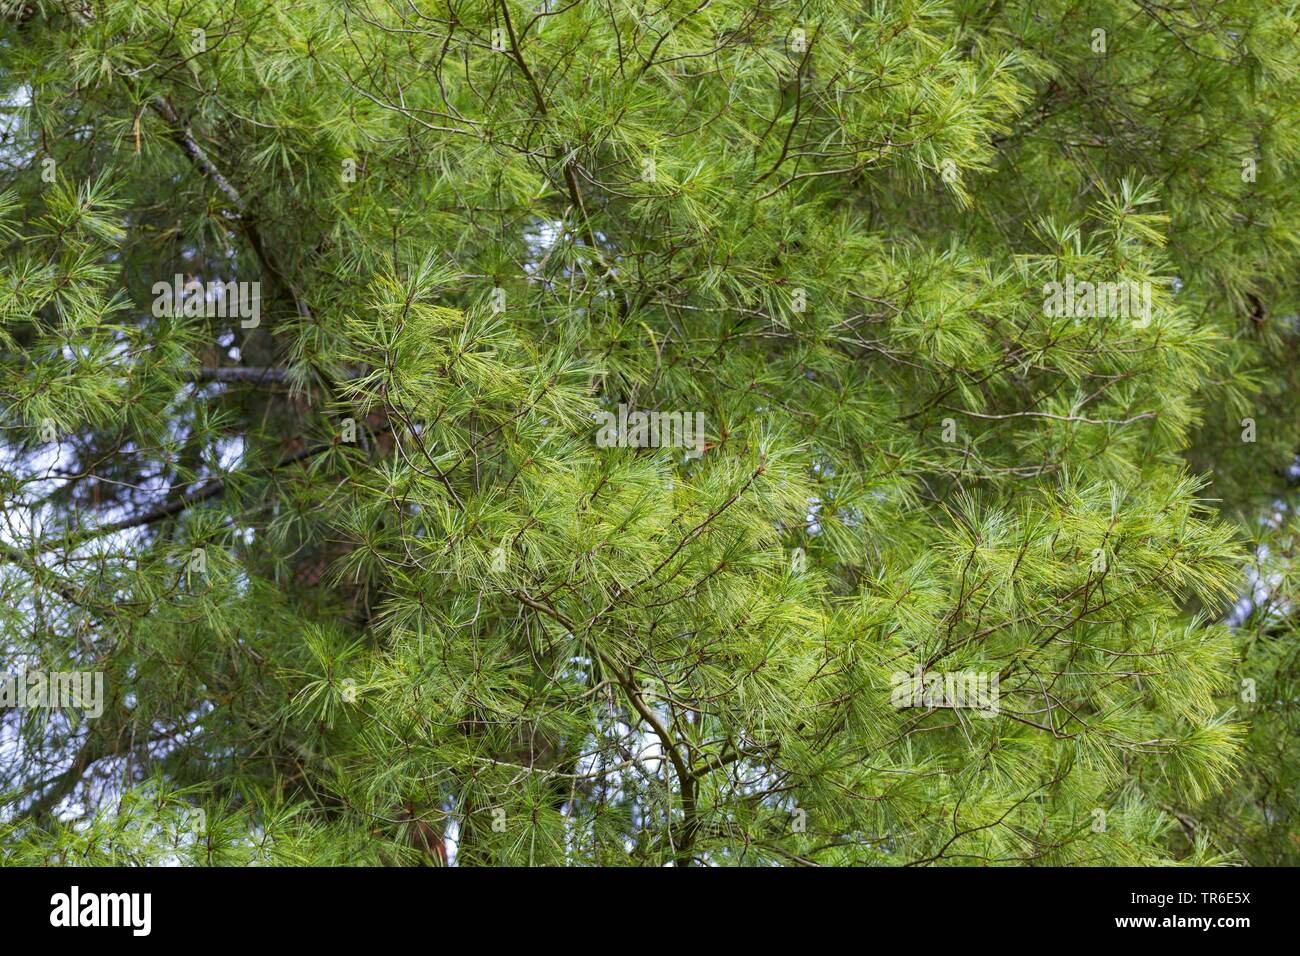 Eastern white pine (Pinus strobus), branches Stock Photo